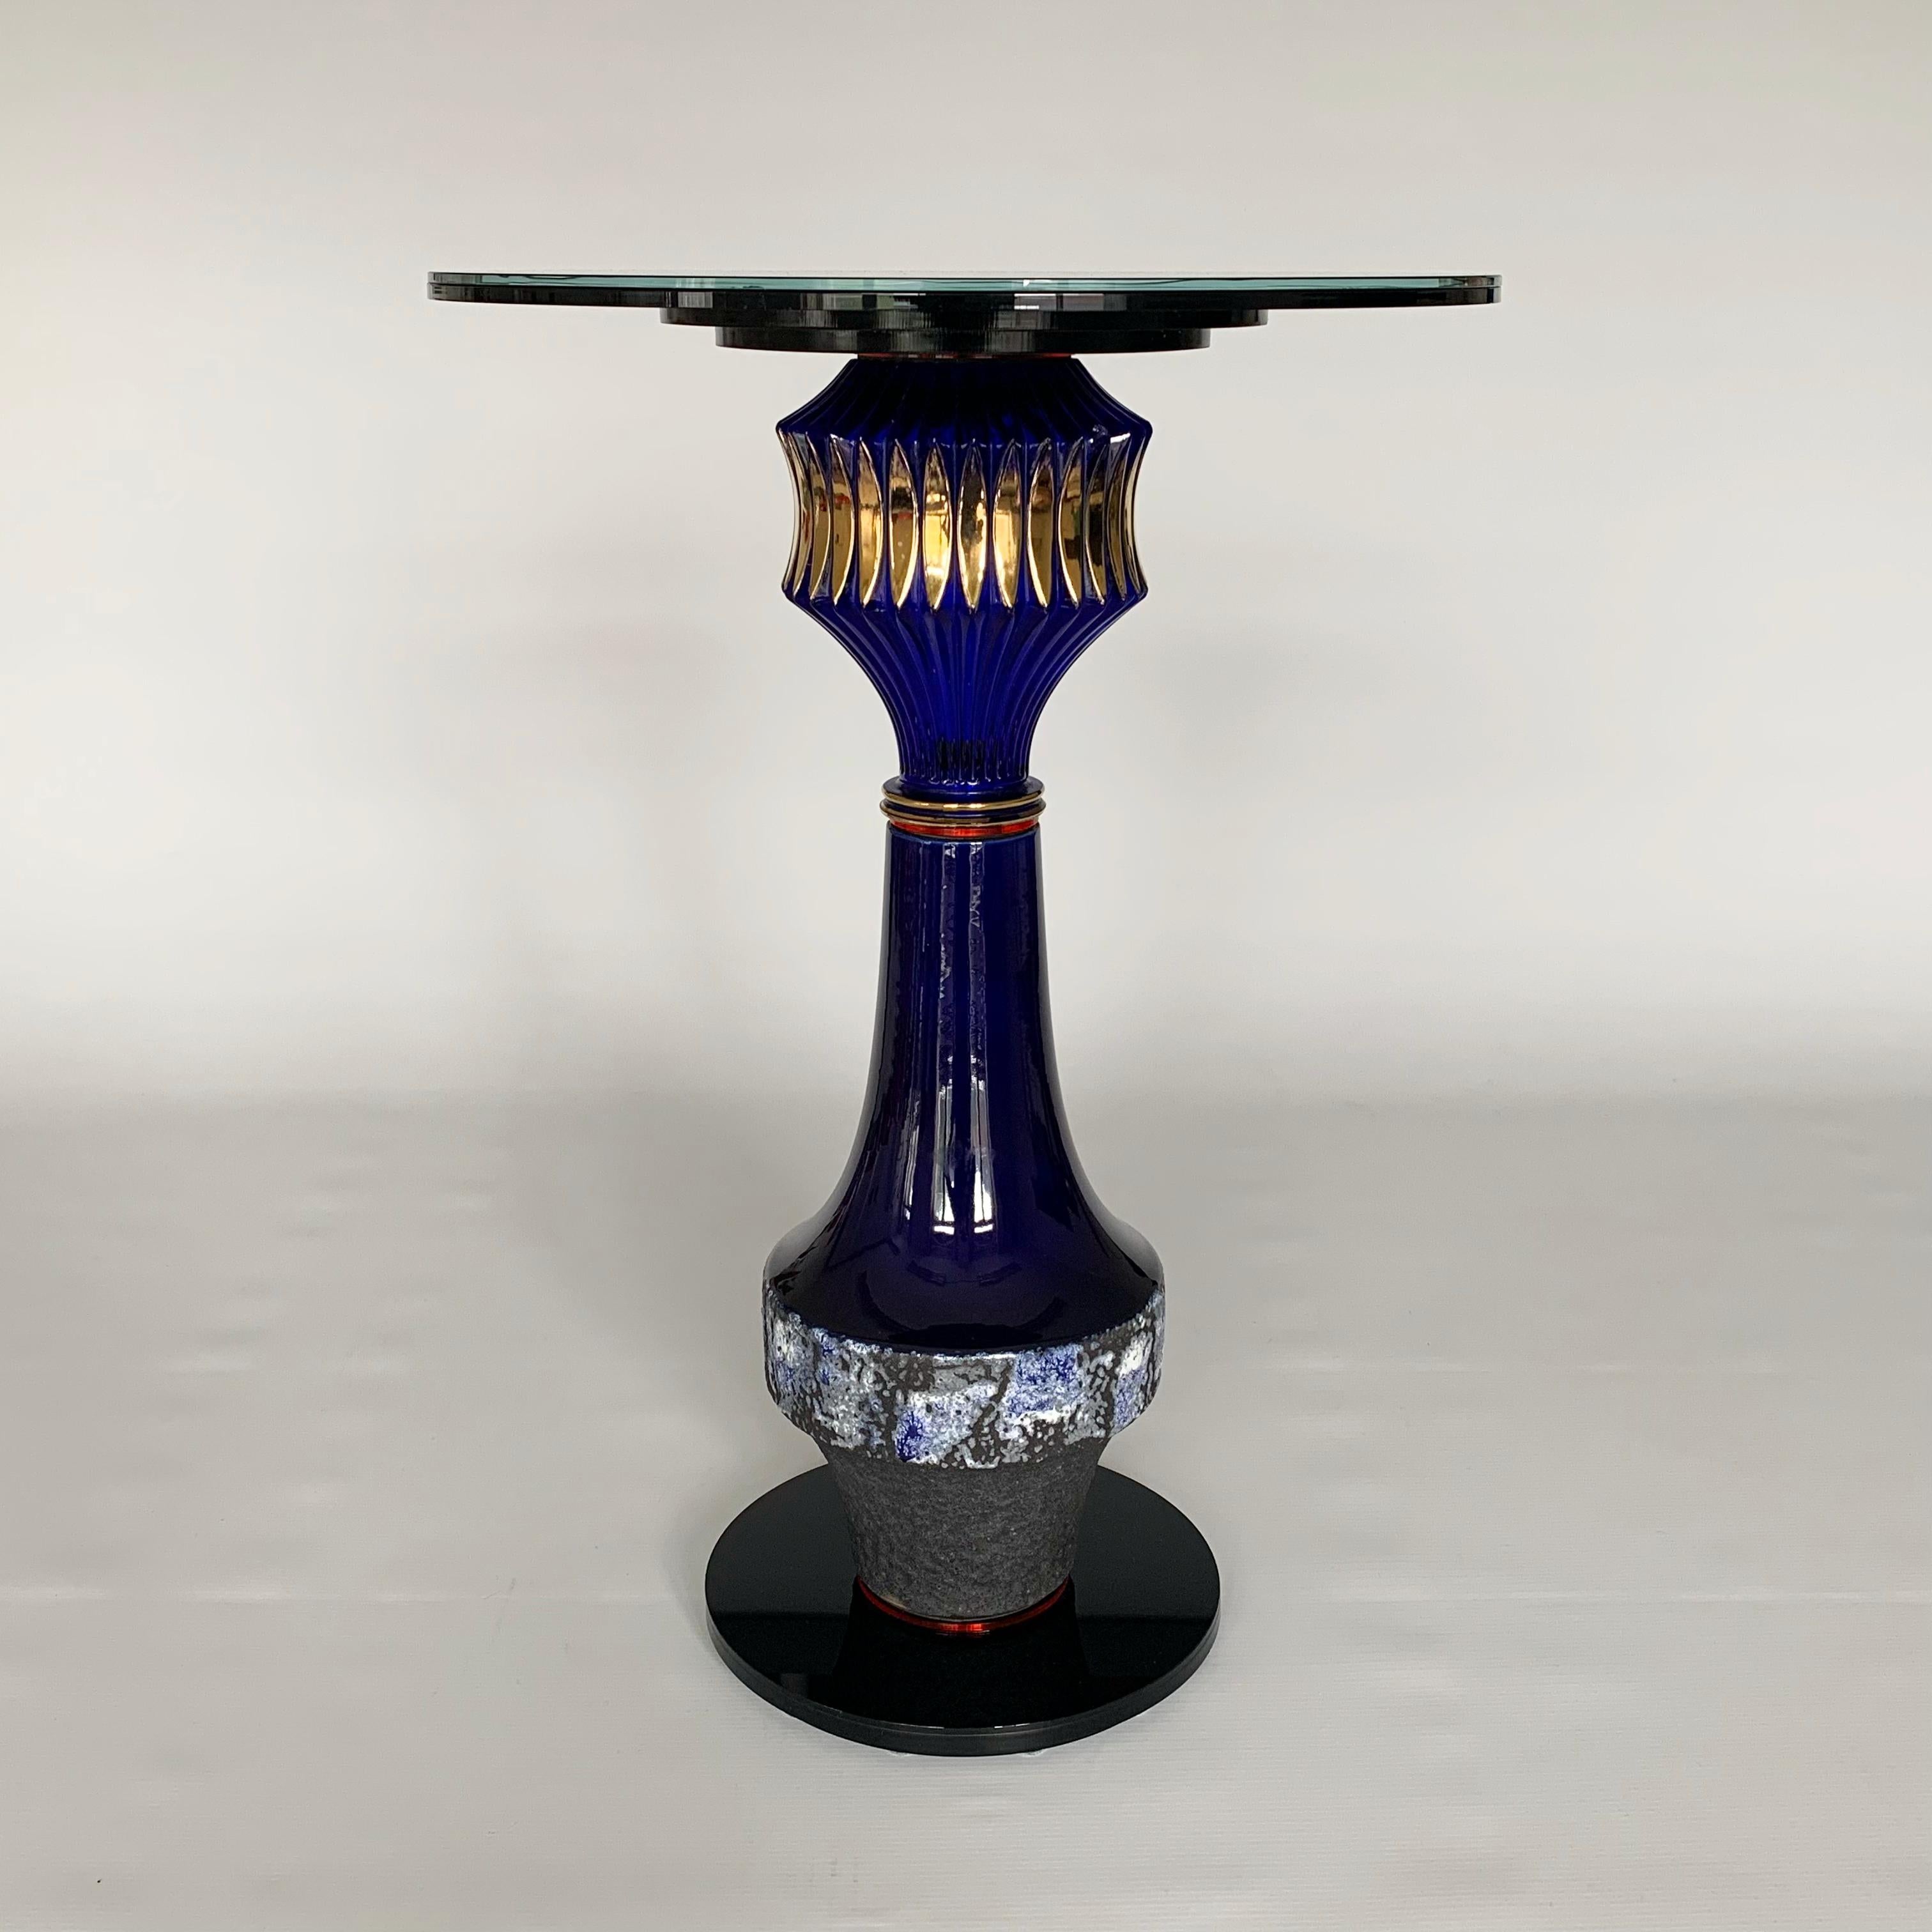 Der Designer und Artis Andreas Berlin hat eine Kollektion von außergewöhnlichen Beistelltischen entworfen. Diese Tische sind Skulpturen und nützliche Upcycling-Tische der Spitzenklasse. Die in Antiquitätenläden gefundenen Vasen erhalten als Teil